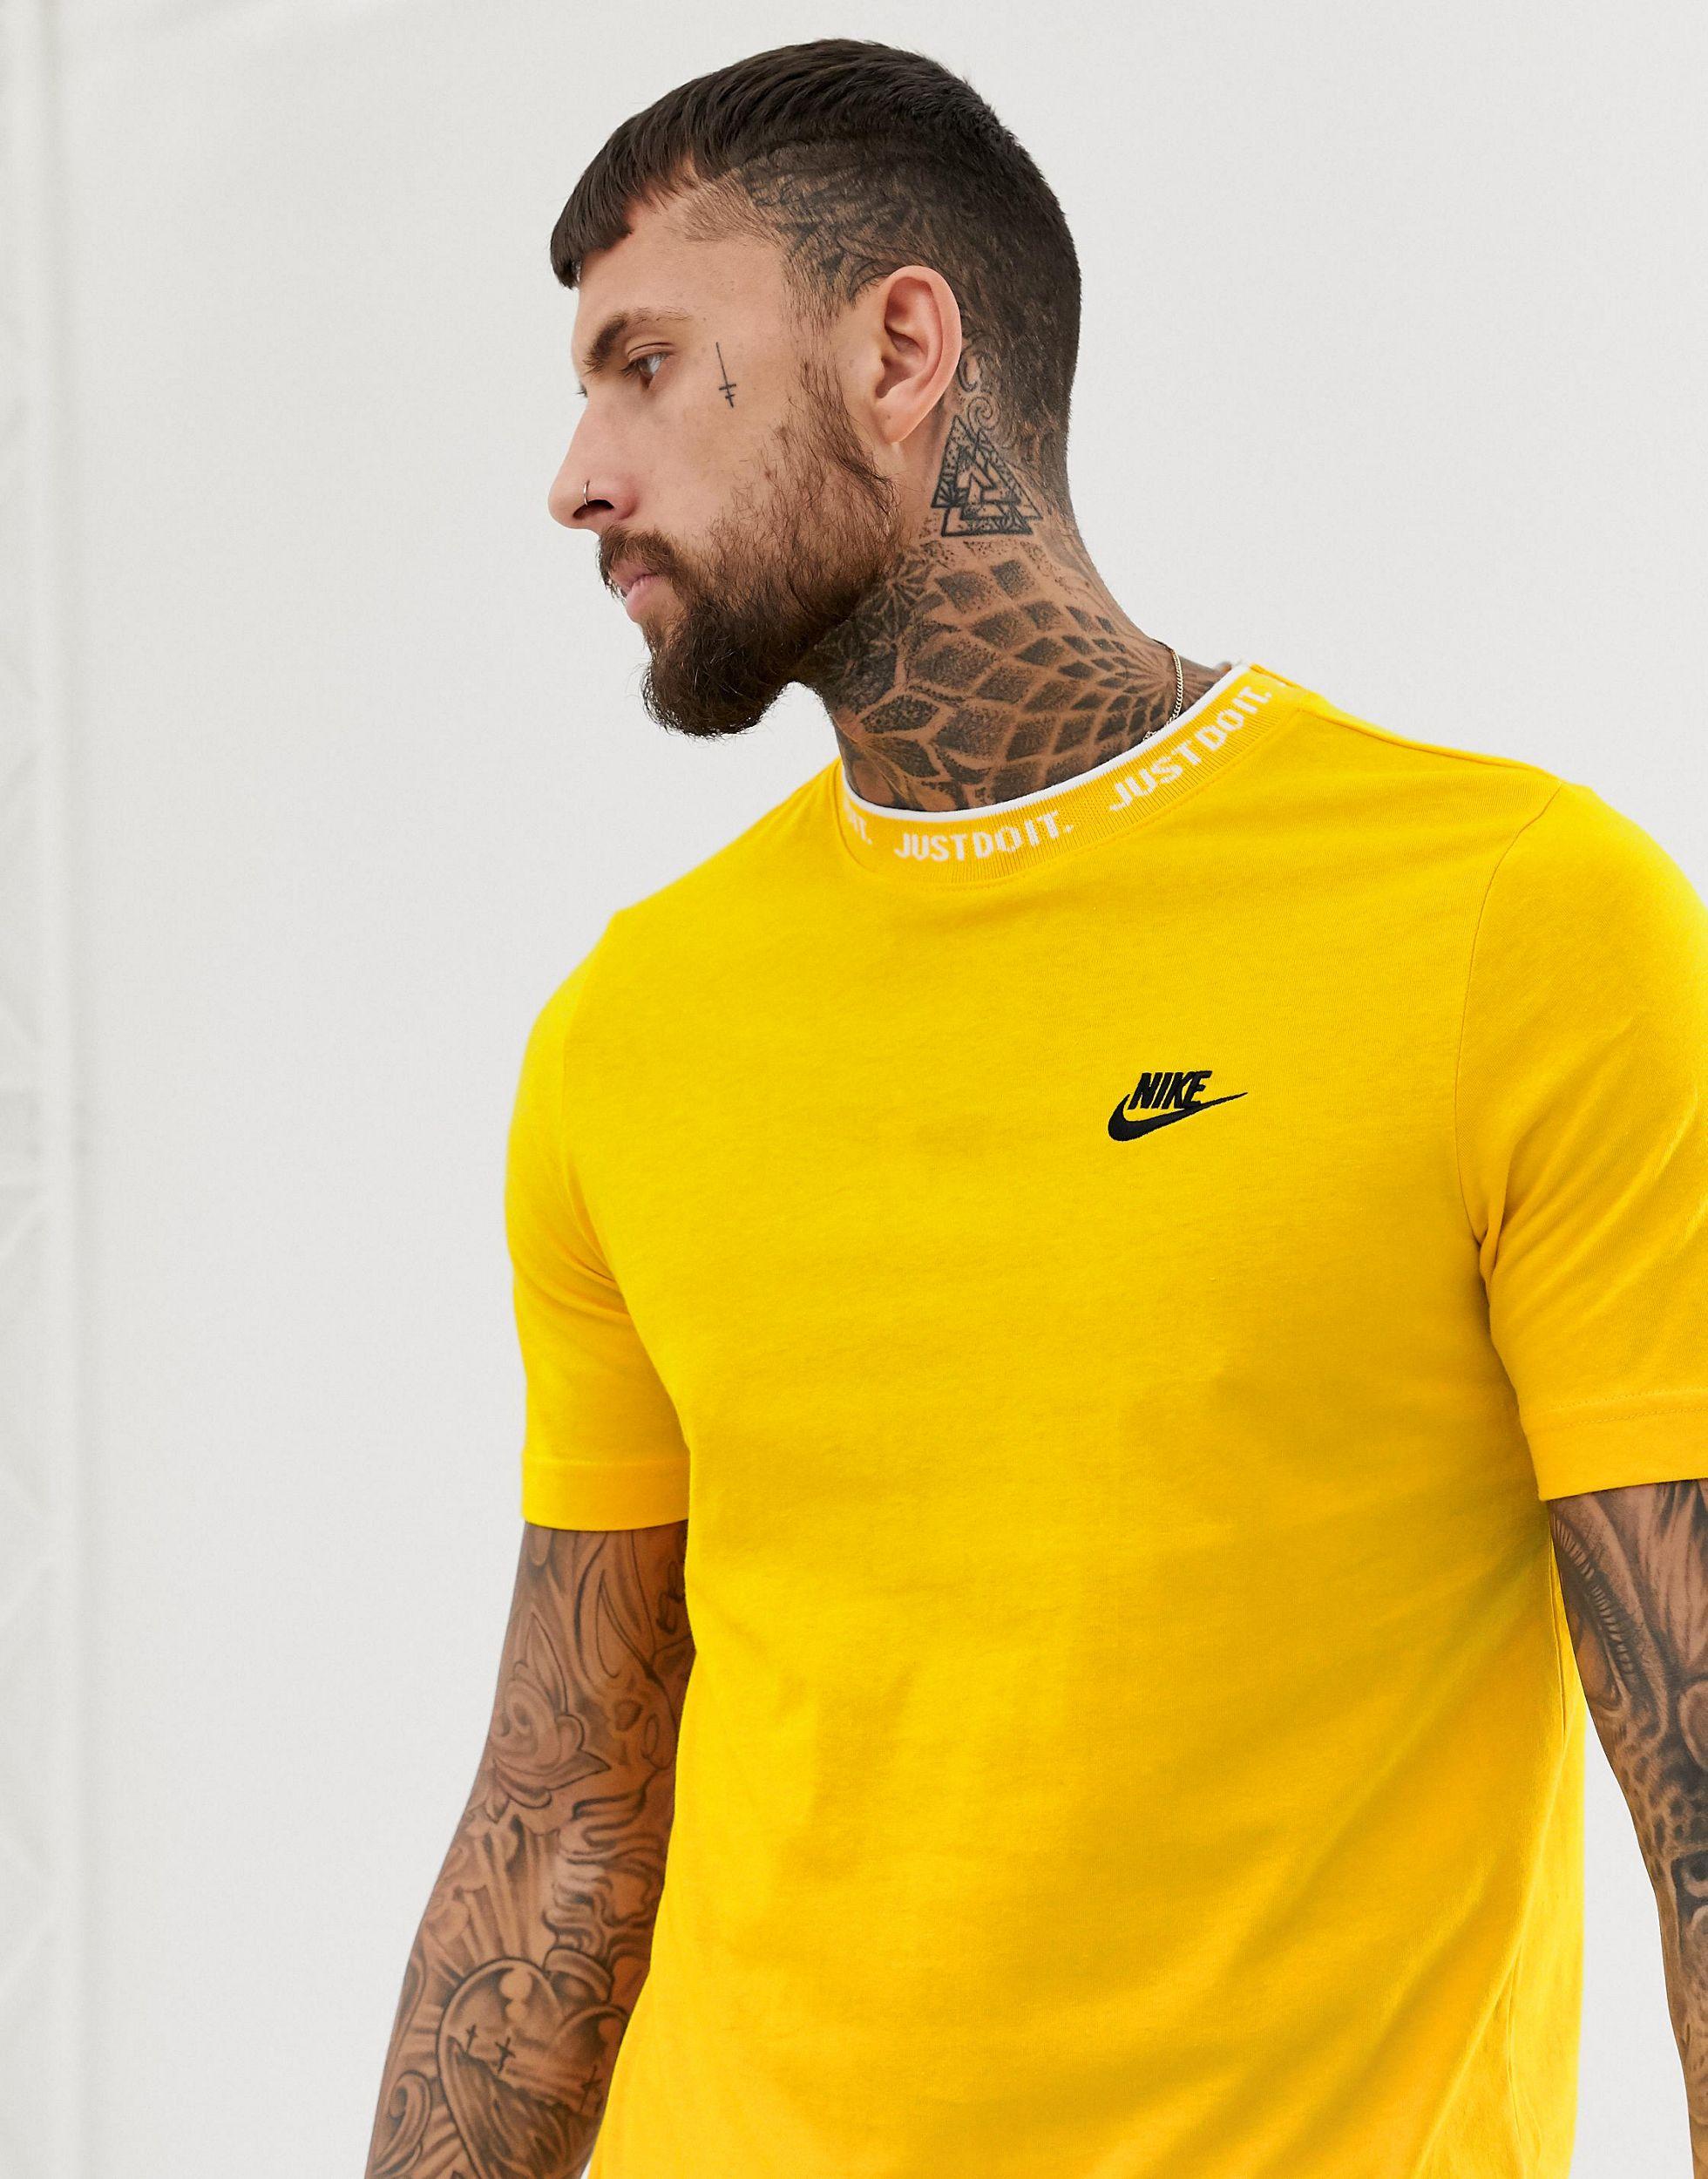 Camiseta amarilla con logo just it Nike de hombre de color | Lyst